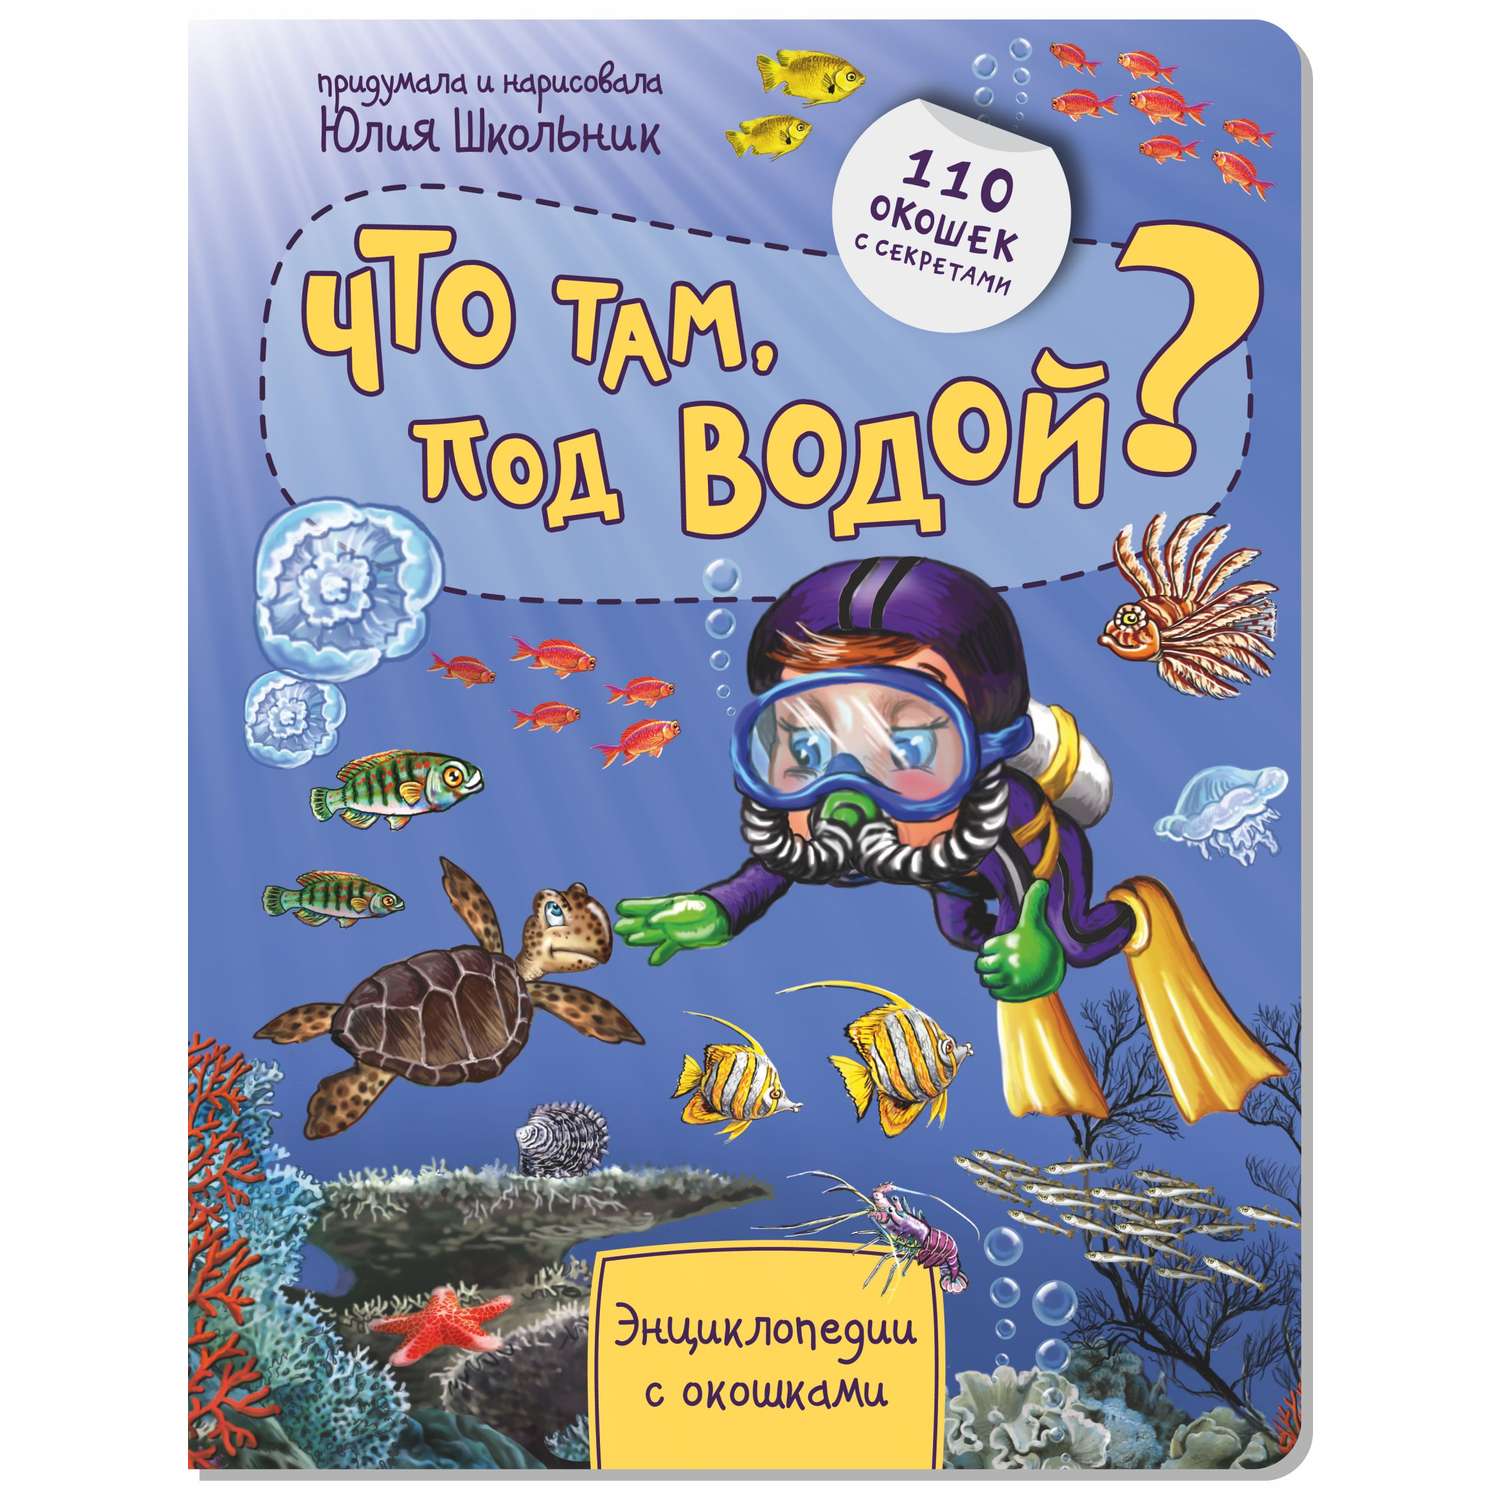 Детская энциклопедия BimBiMon с окошками. Что там под водой в суперобложке - фото 1